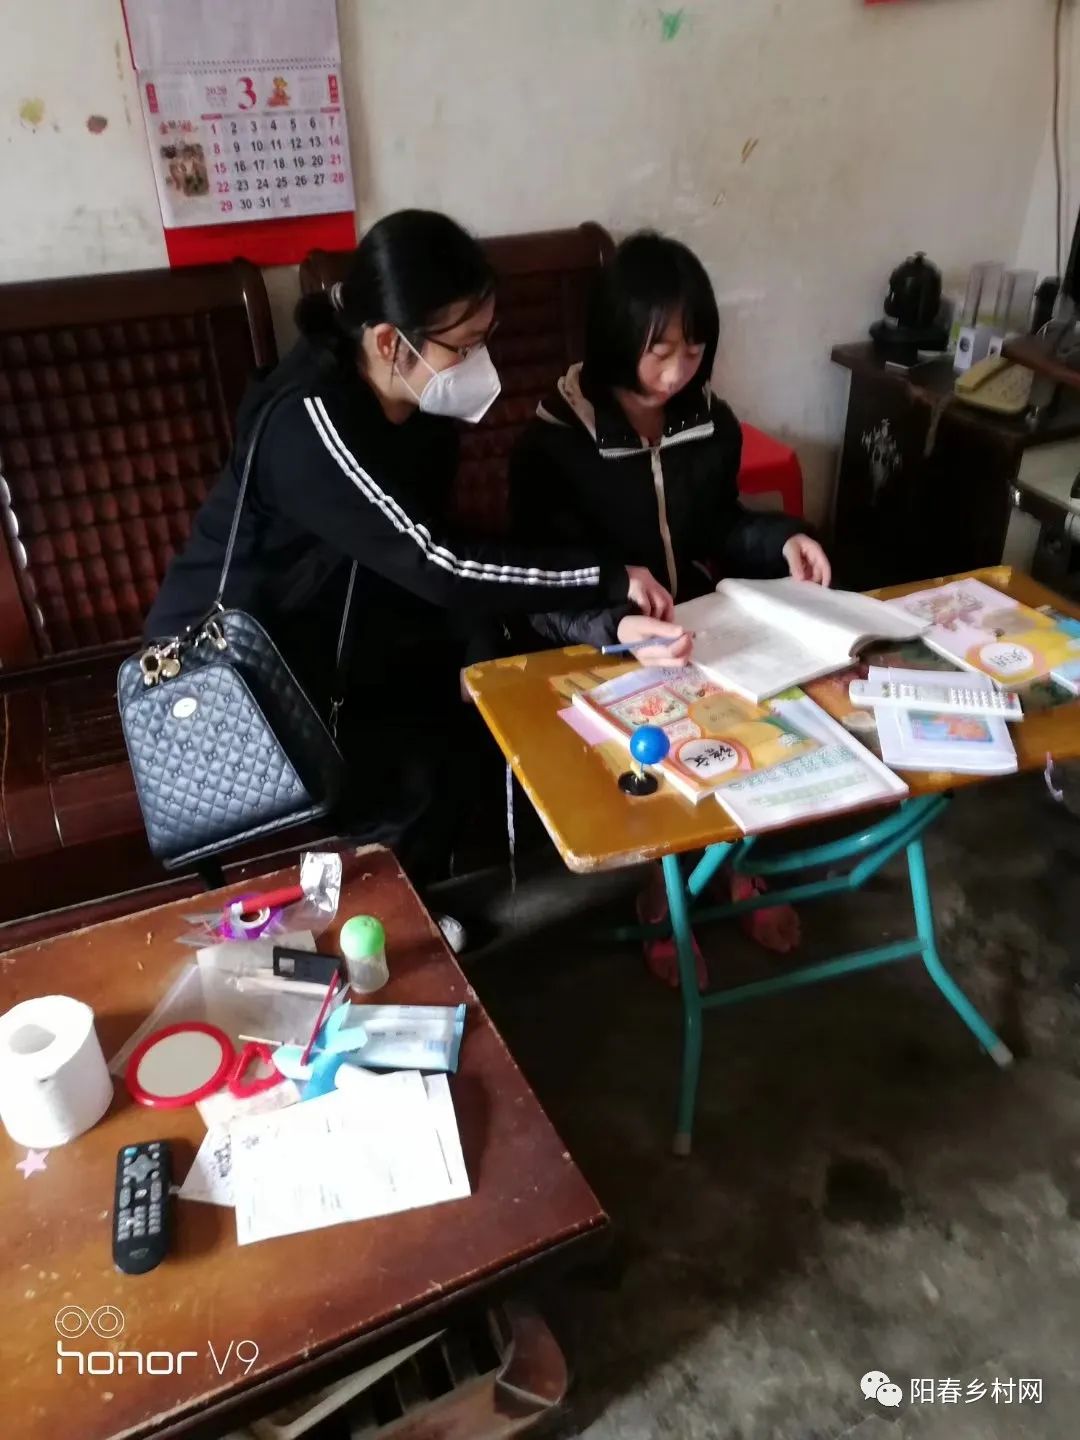 双滘镇中心小学全体教师在新冠病毒肺炎疫情期间积极指导学生开展线上学习